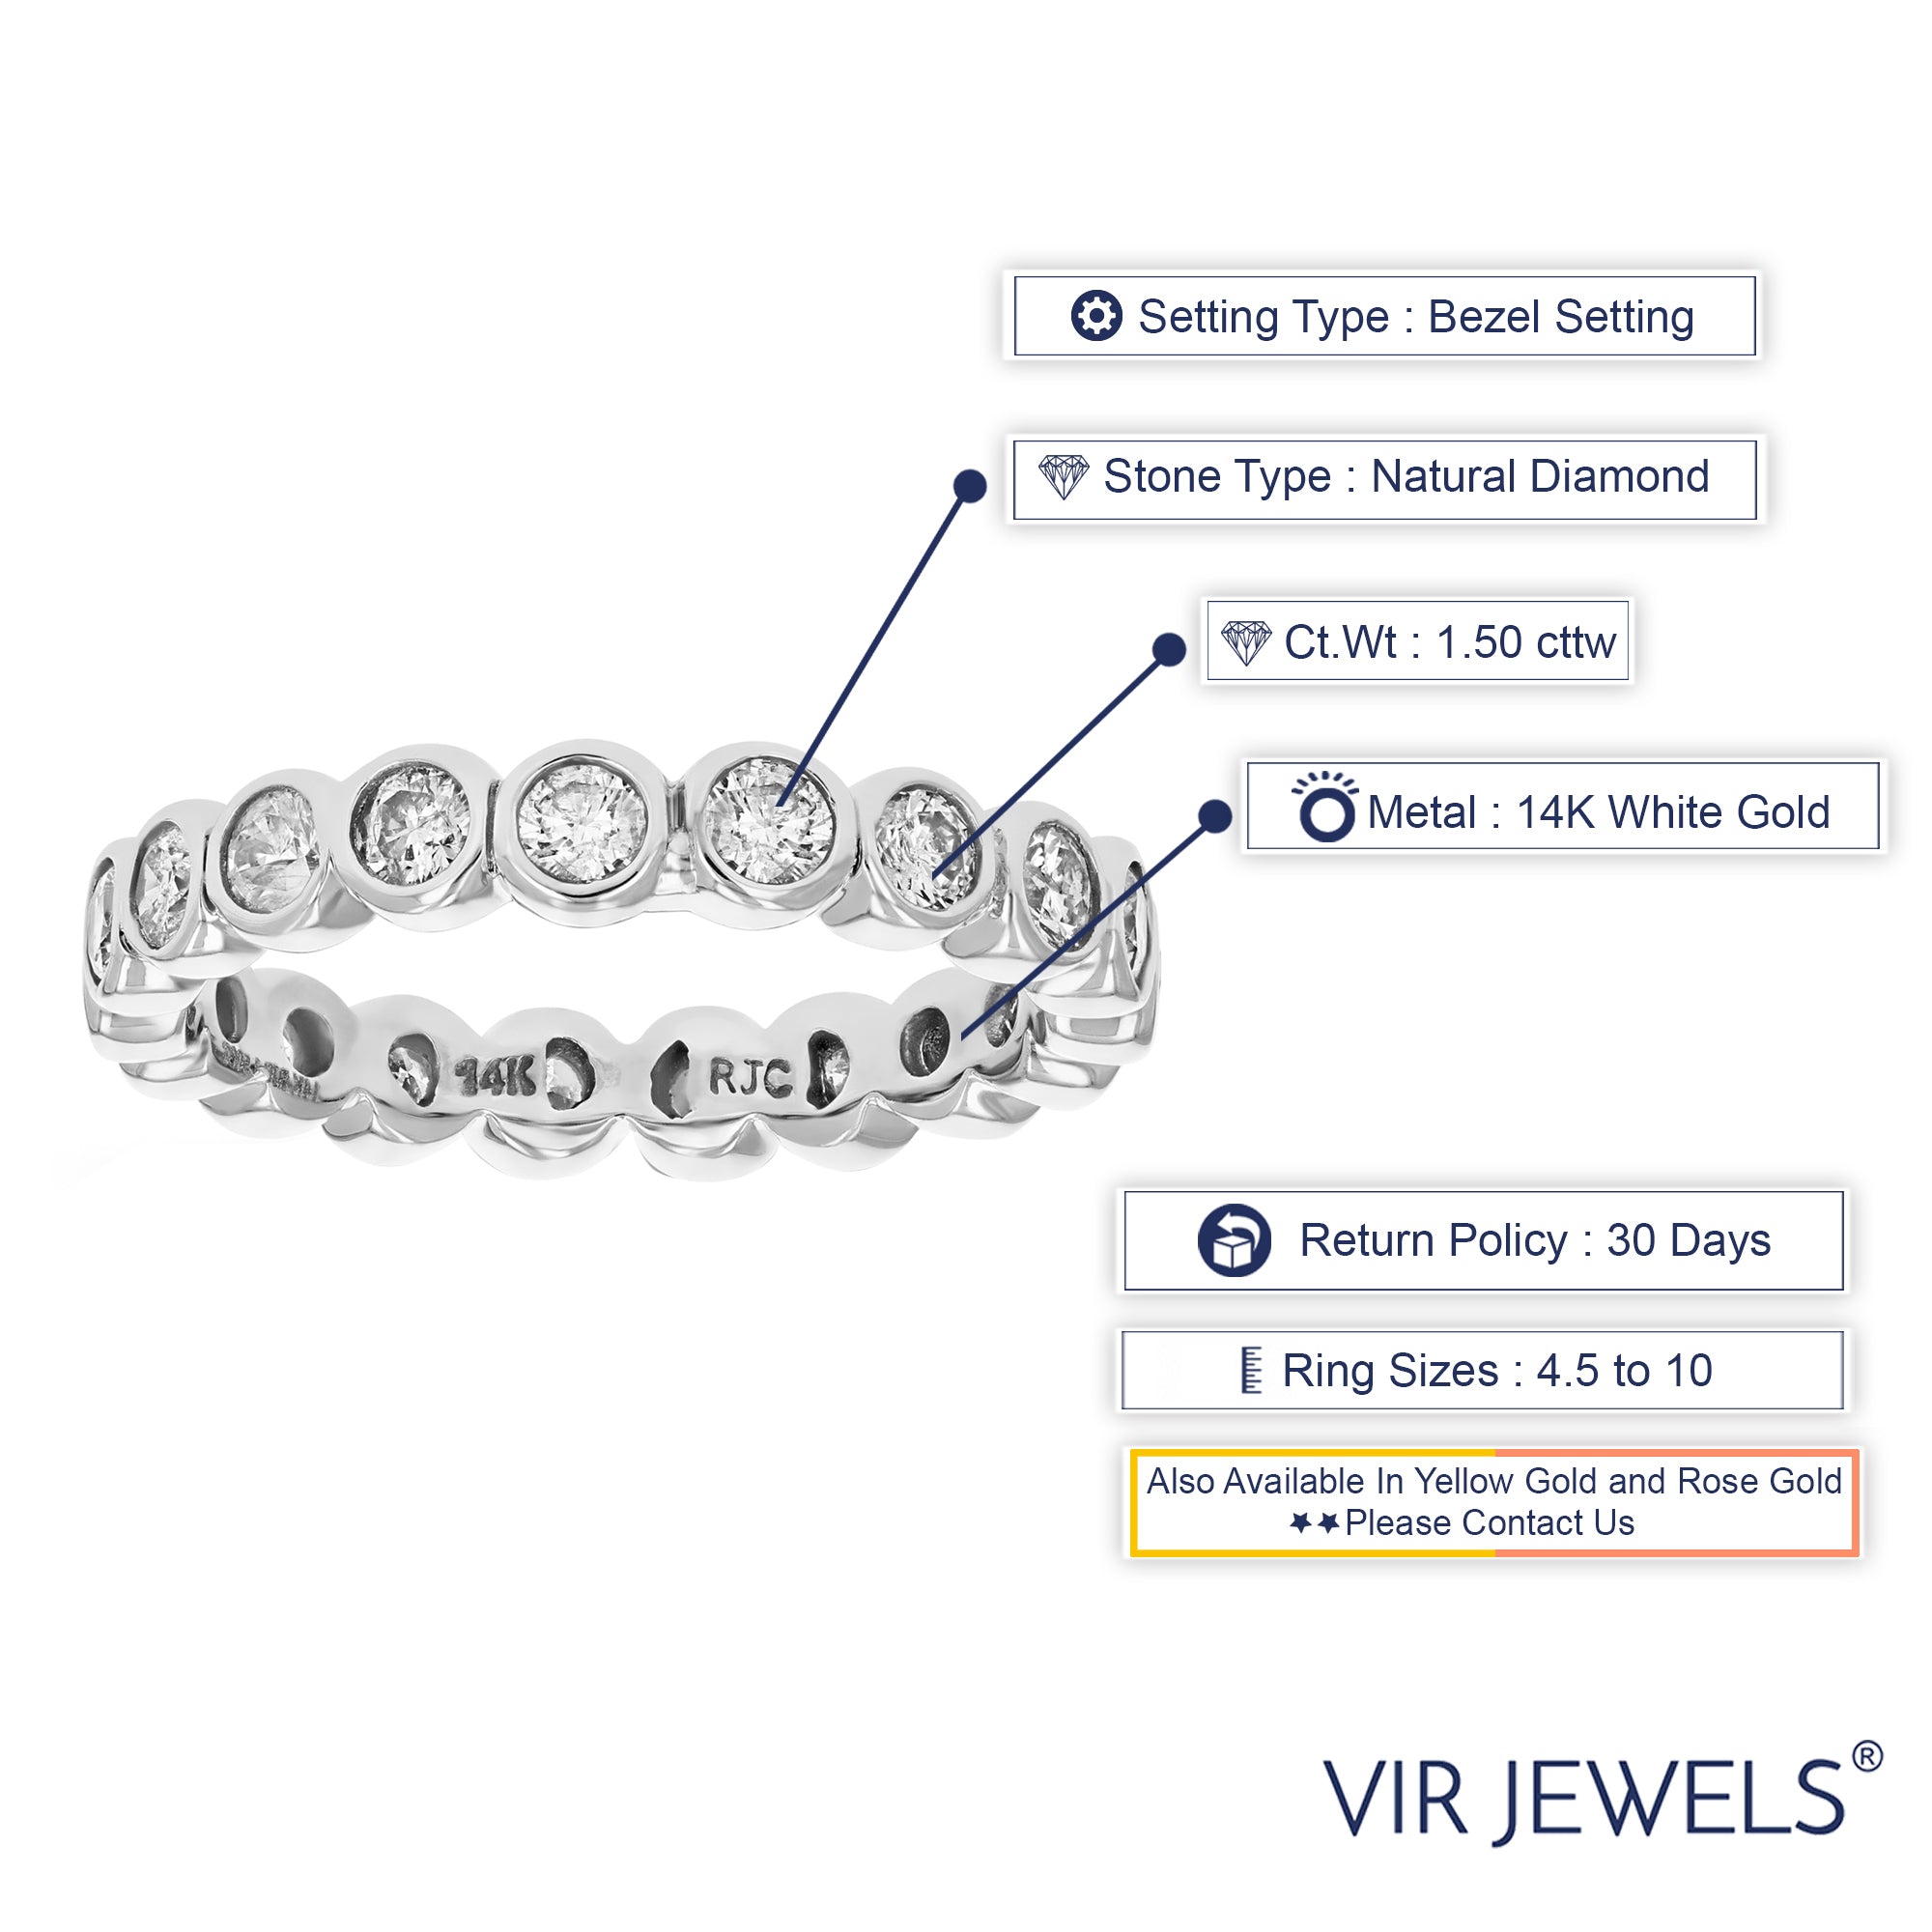 1.50 cttw Diamond Eternity Ring for Women, Wedding Band in 14K White Gold Bezel Set, Size 5-9